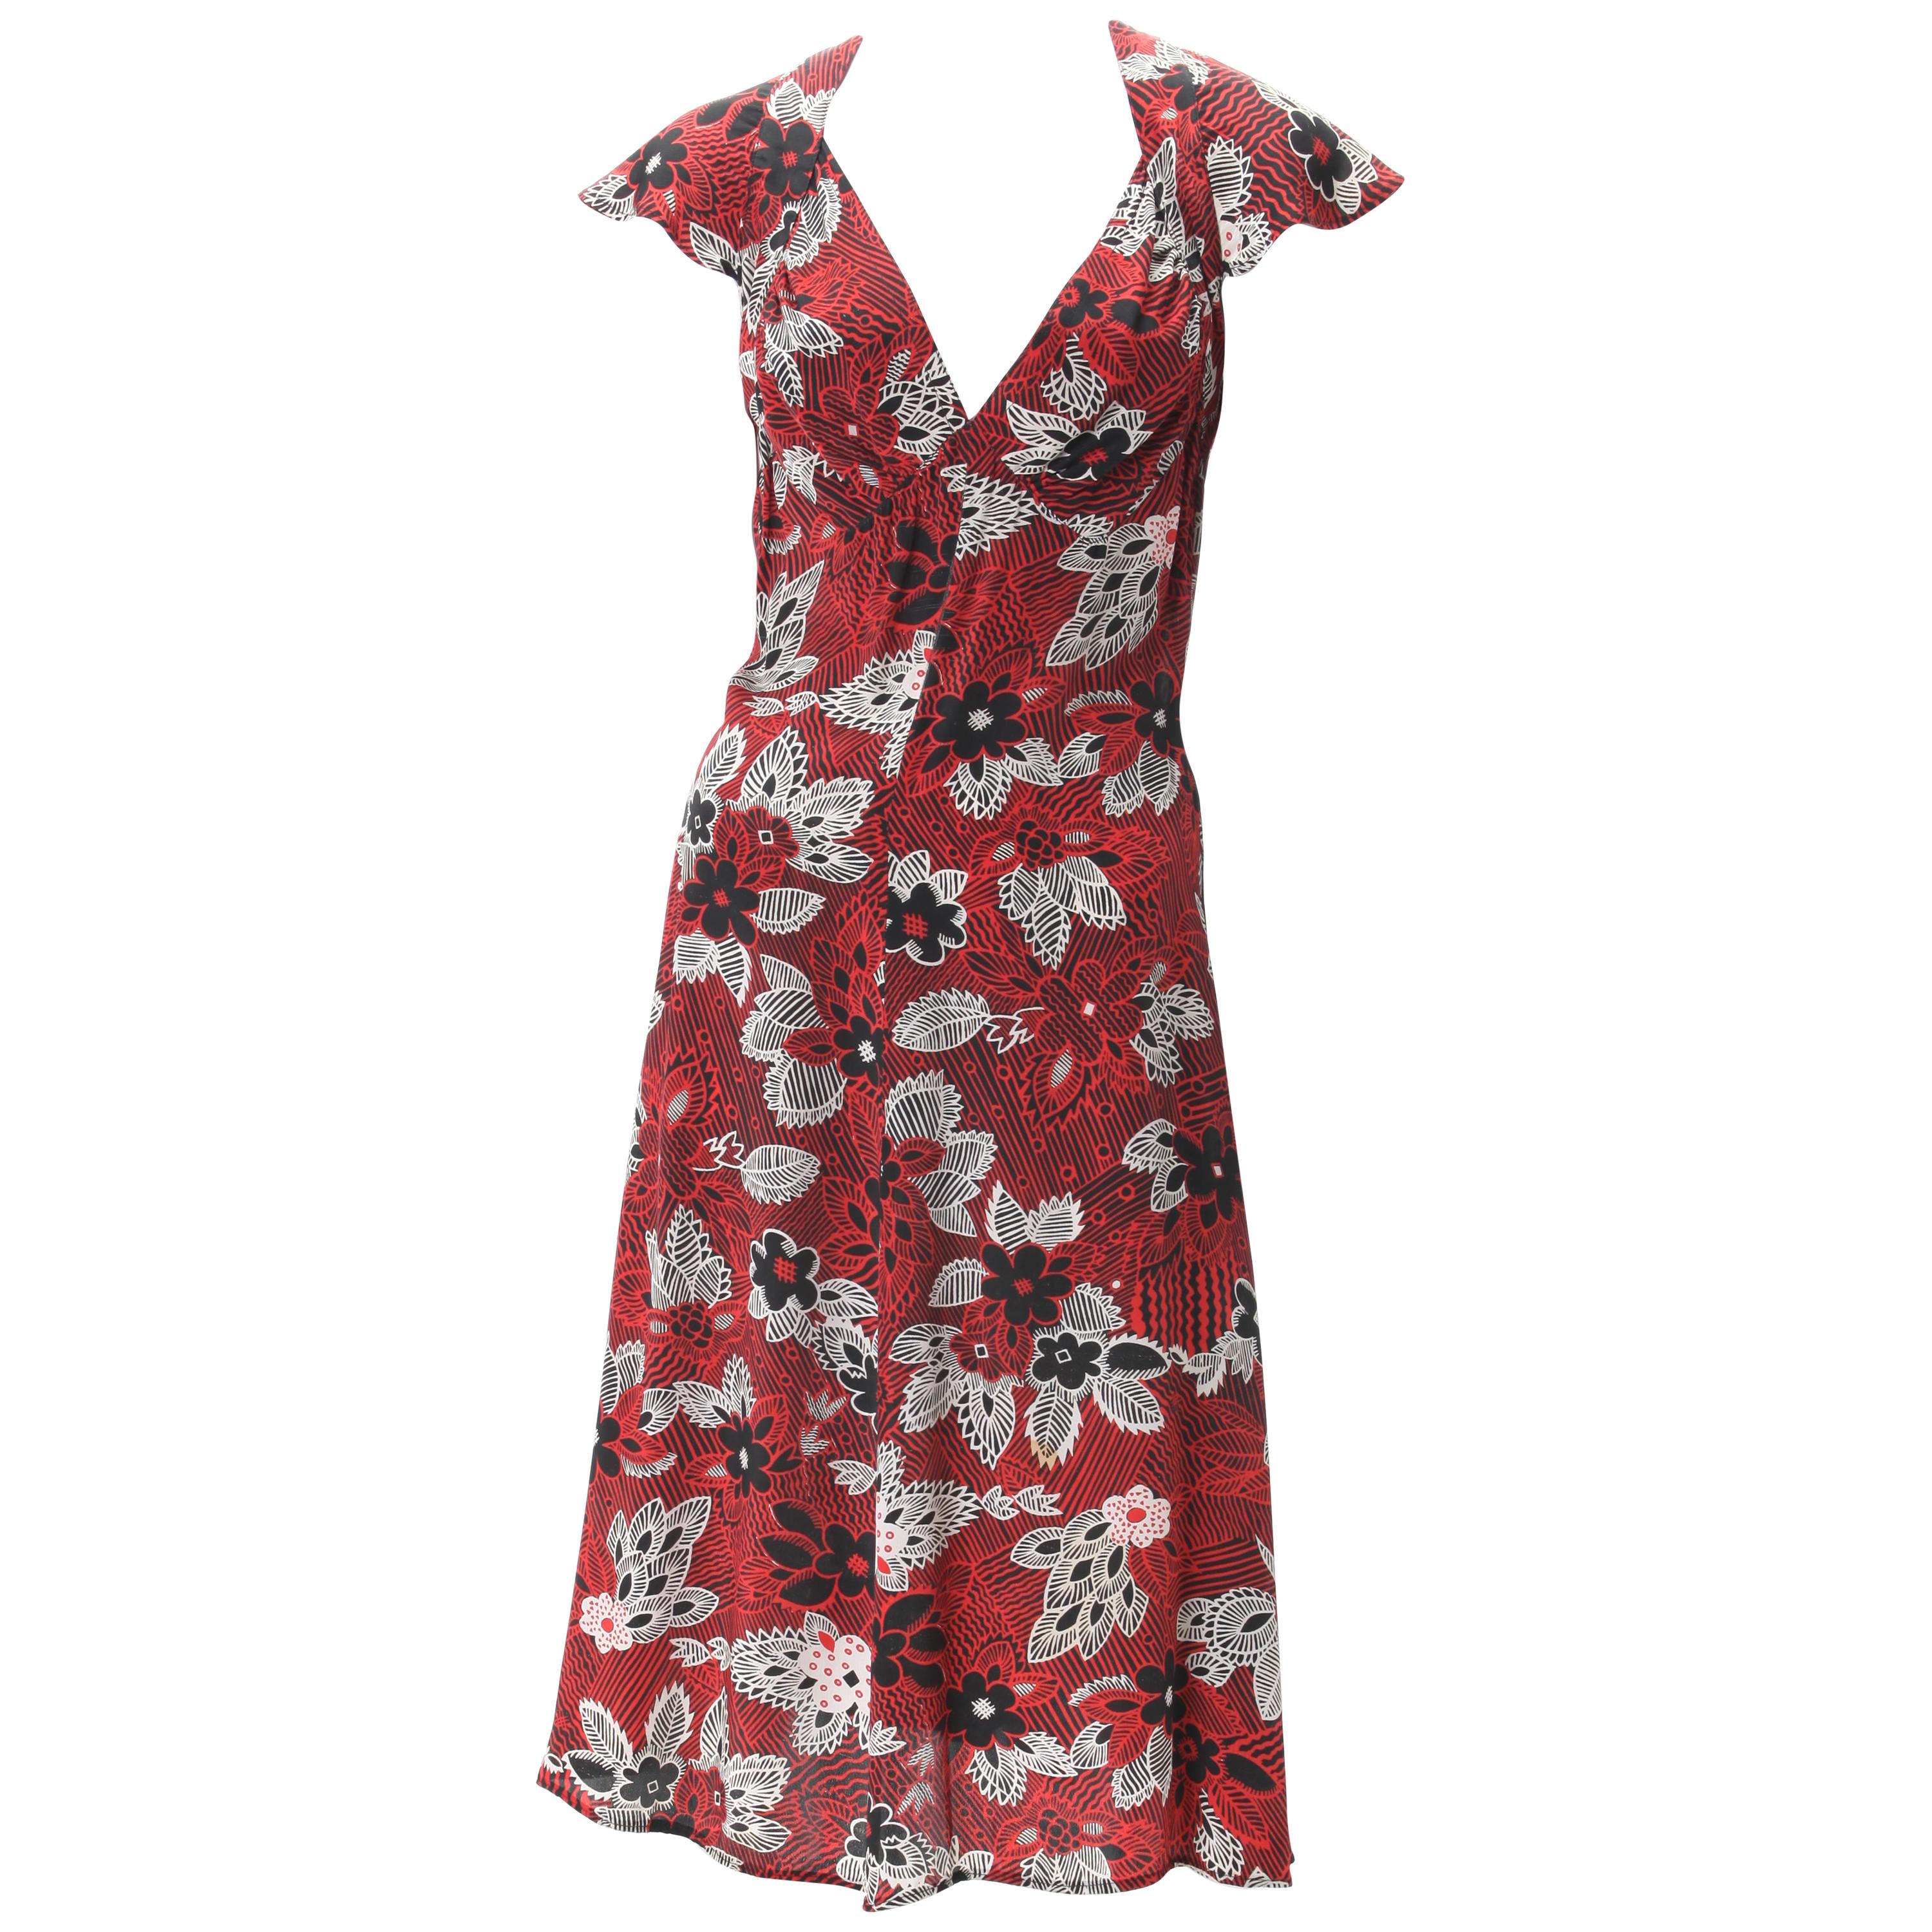 Ossie Clark Celia Birtwell Print Kleid ca. 1970er Jahre getragen von Julia Roberts